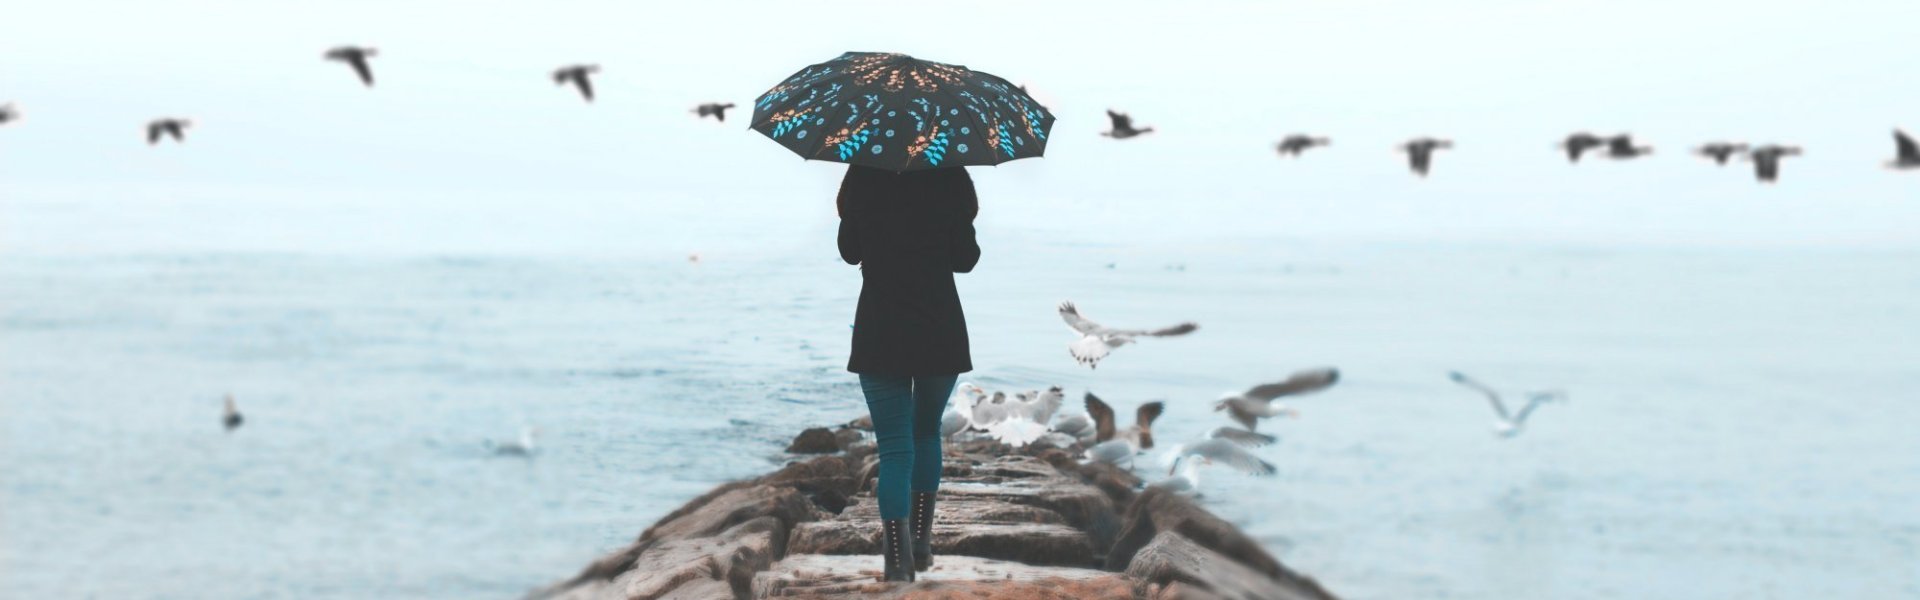 Vrouw met paraplu boven het hoofd loopt op een golfbreker naar de kustlijn terwijl zeemeeuwen vliegen rond haar.